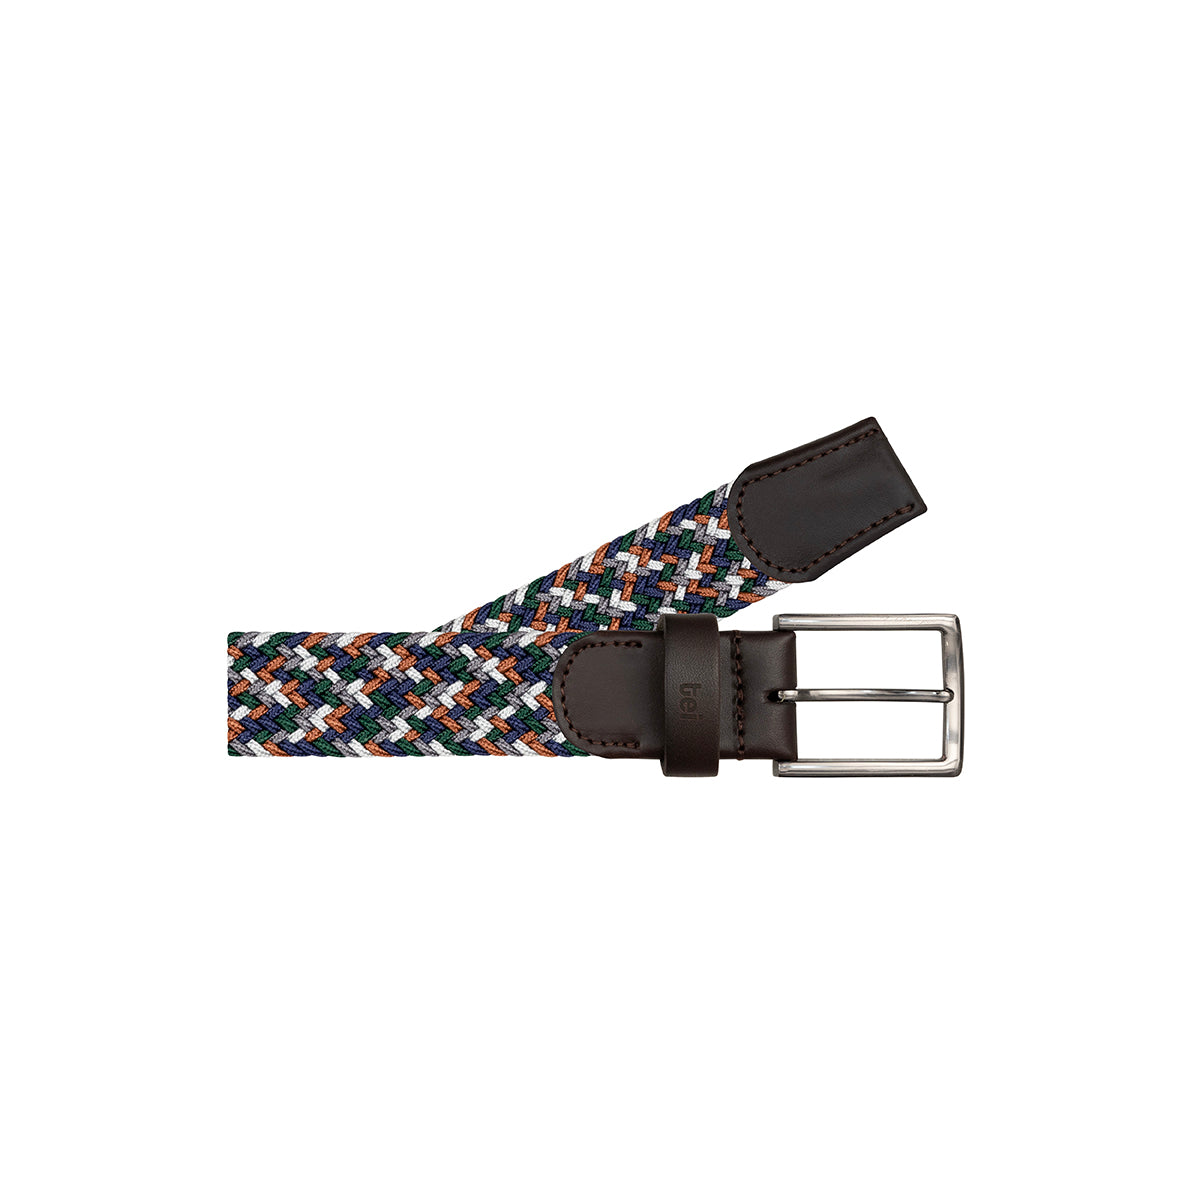 Cinturón trenzado elástico Azul/ Verde/ Caoba/ Gris/ Blanco